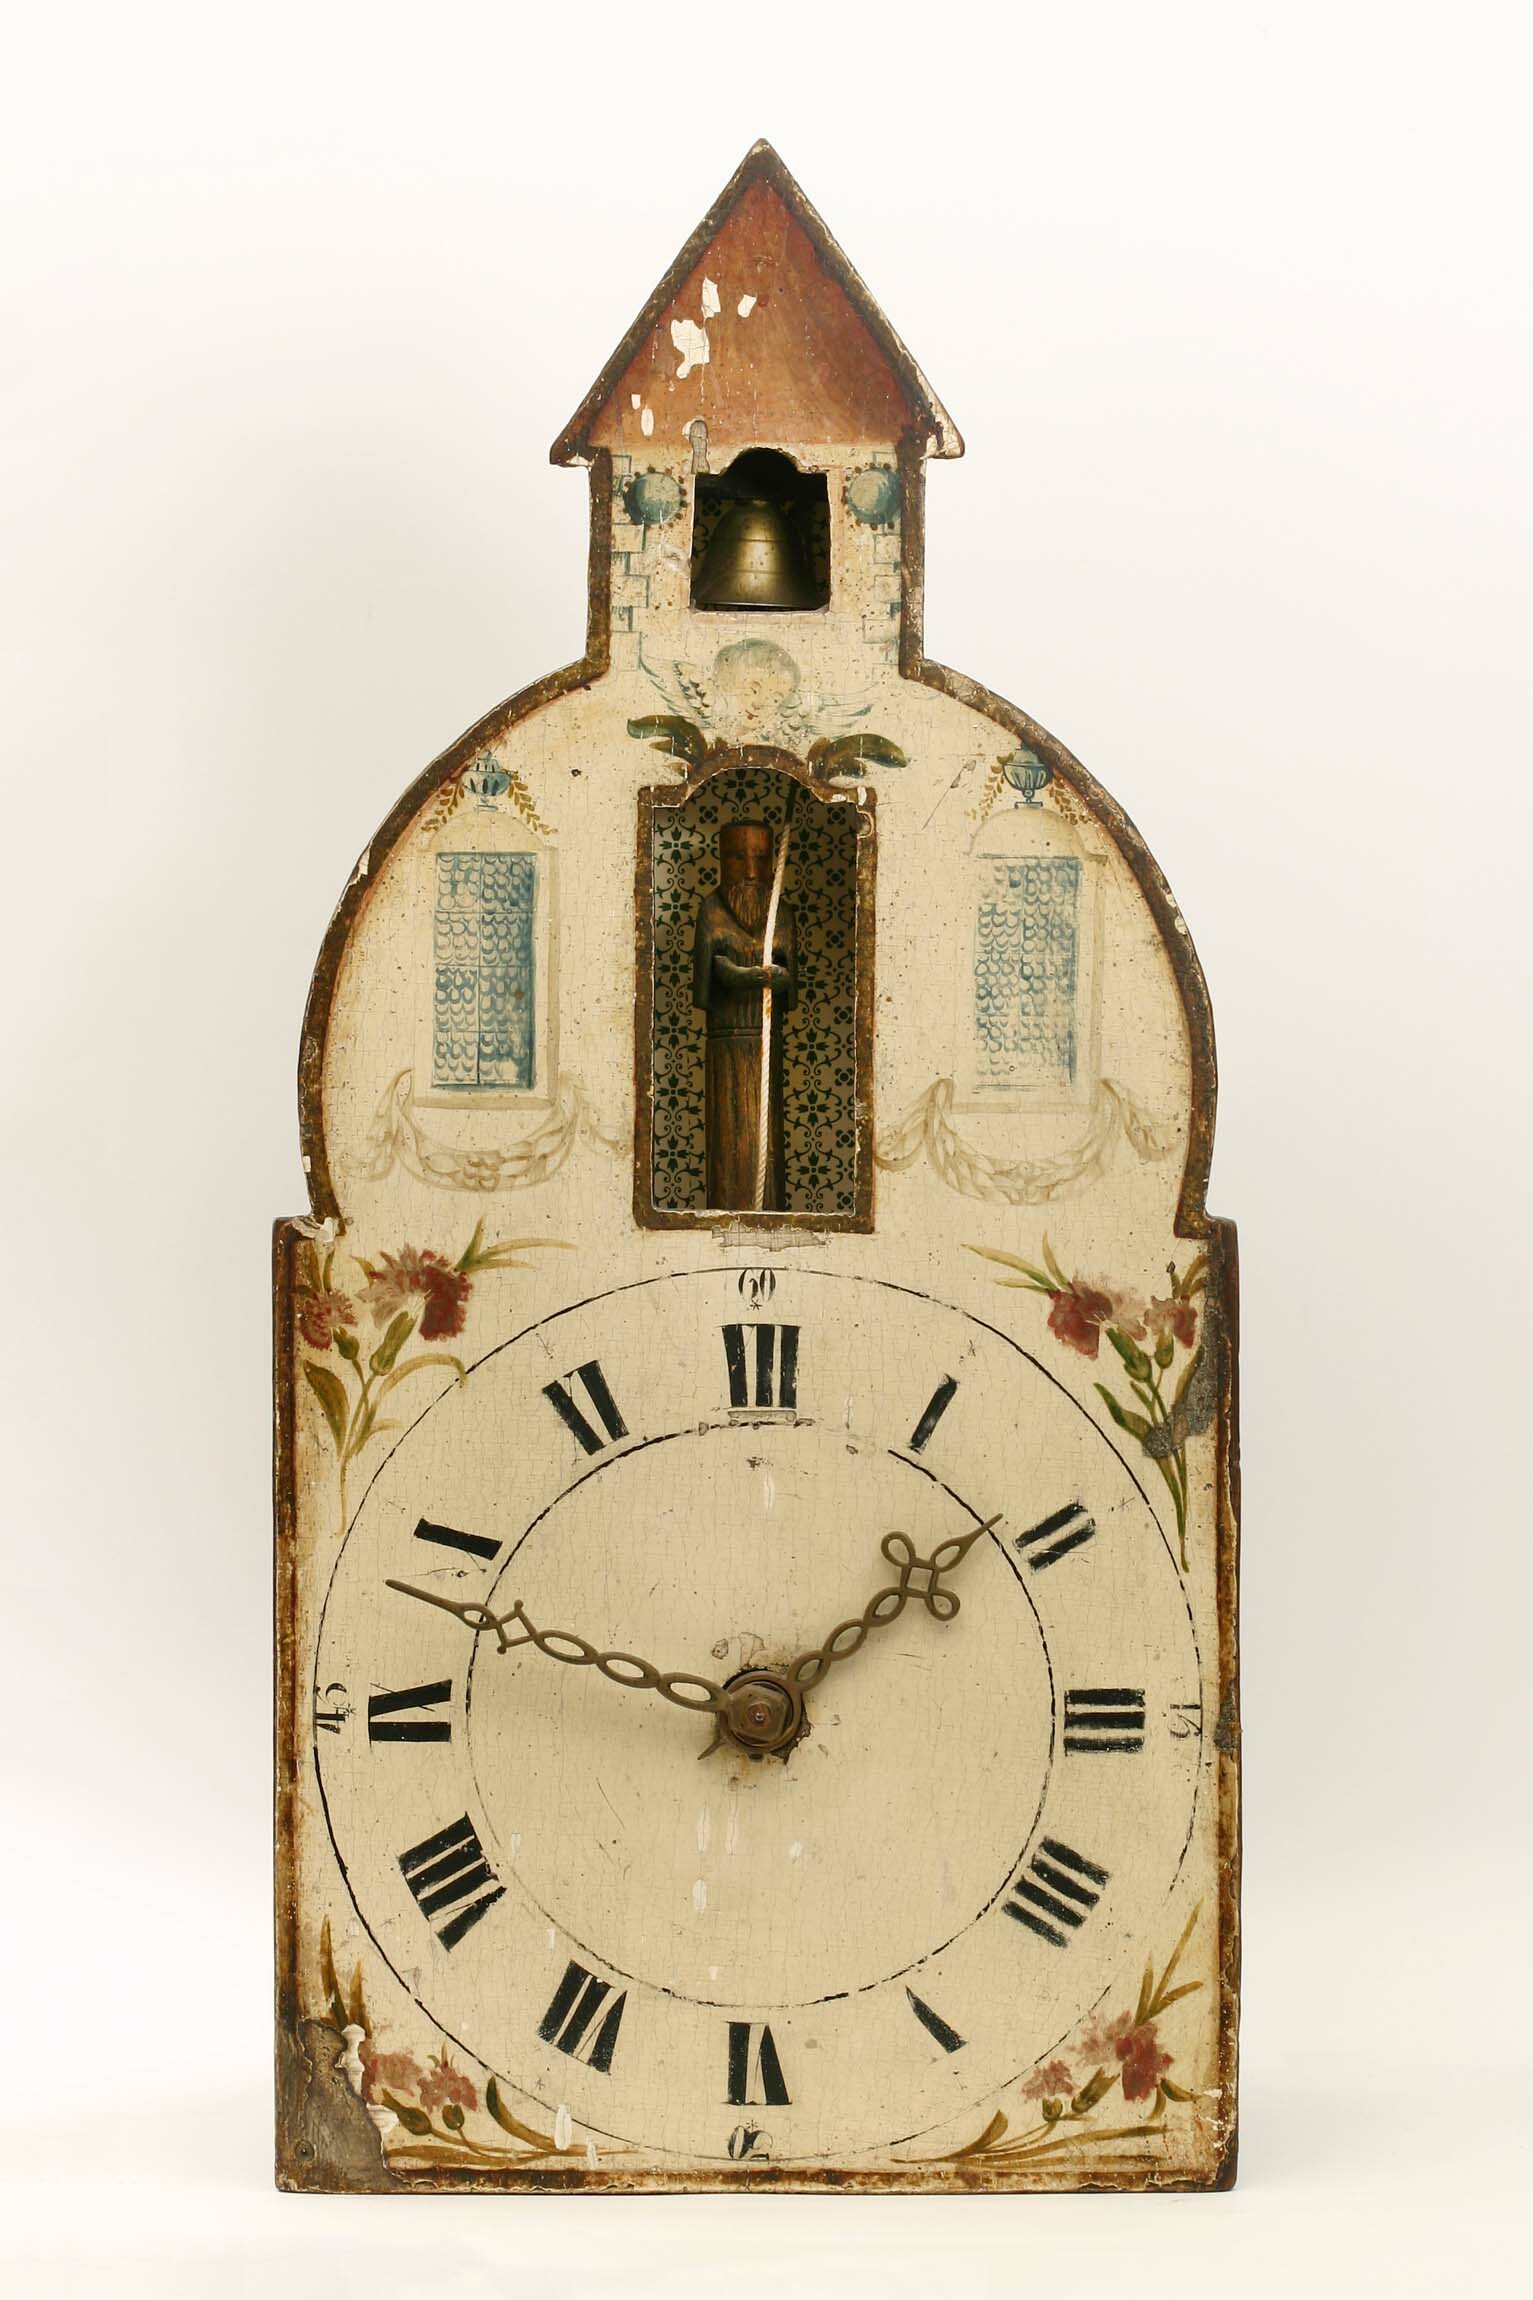 Lackschilduhr mit "Kapuziner", Lorenz Hämmerle, Neustadt, 1803 (Deutsches Uhrenmuseum CC BY-SA)